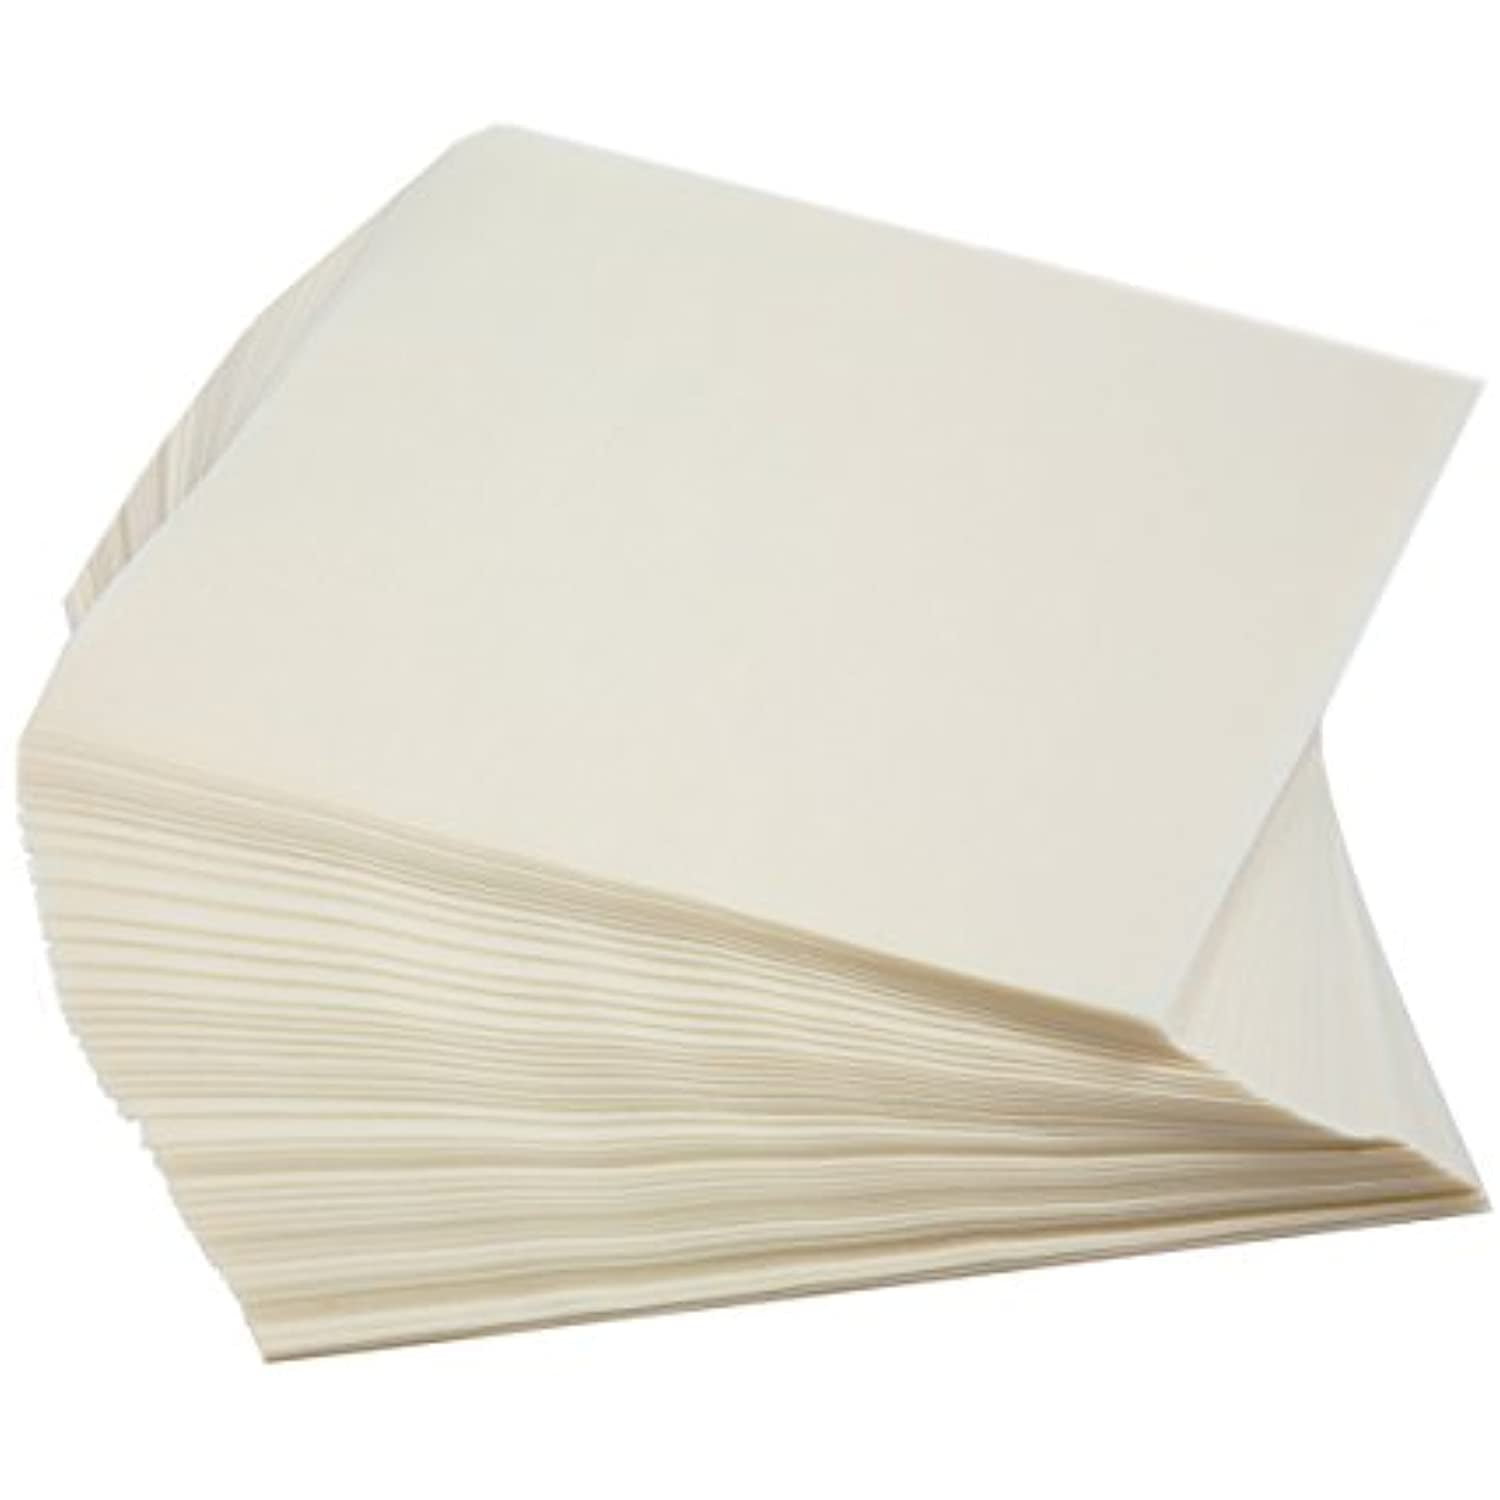 6X6 Parchment Paper Squares (200 Sheets) - Unbleached, Non-Stick, Pre-Cut  Parchm